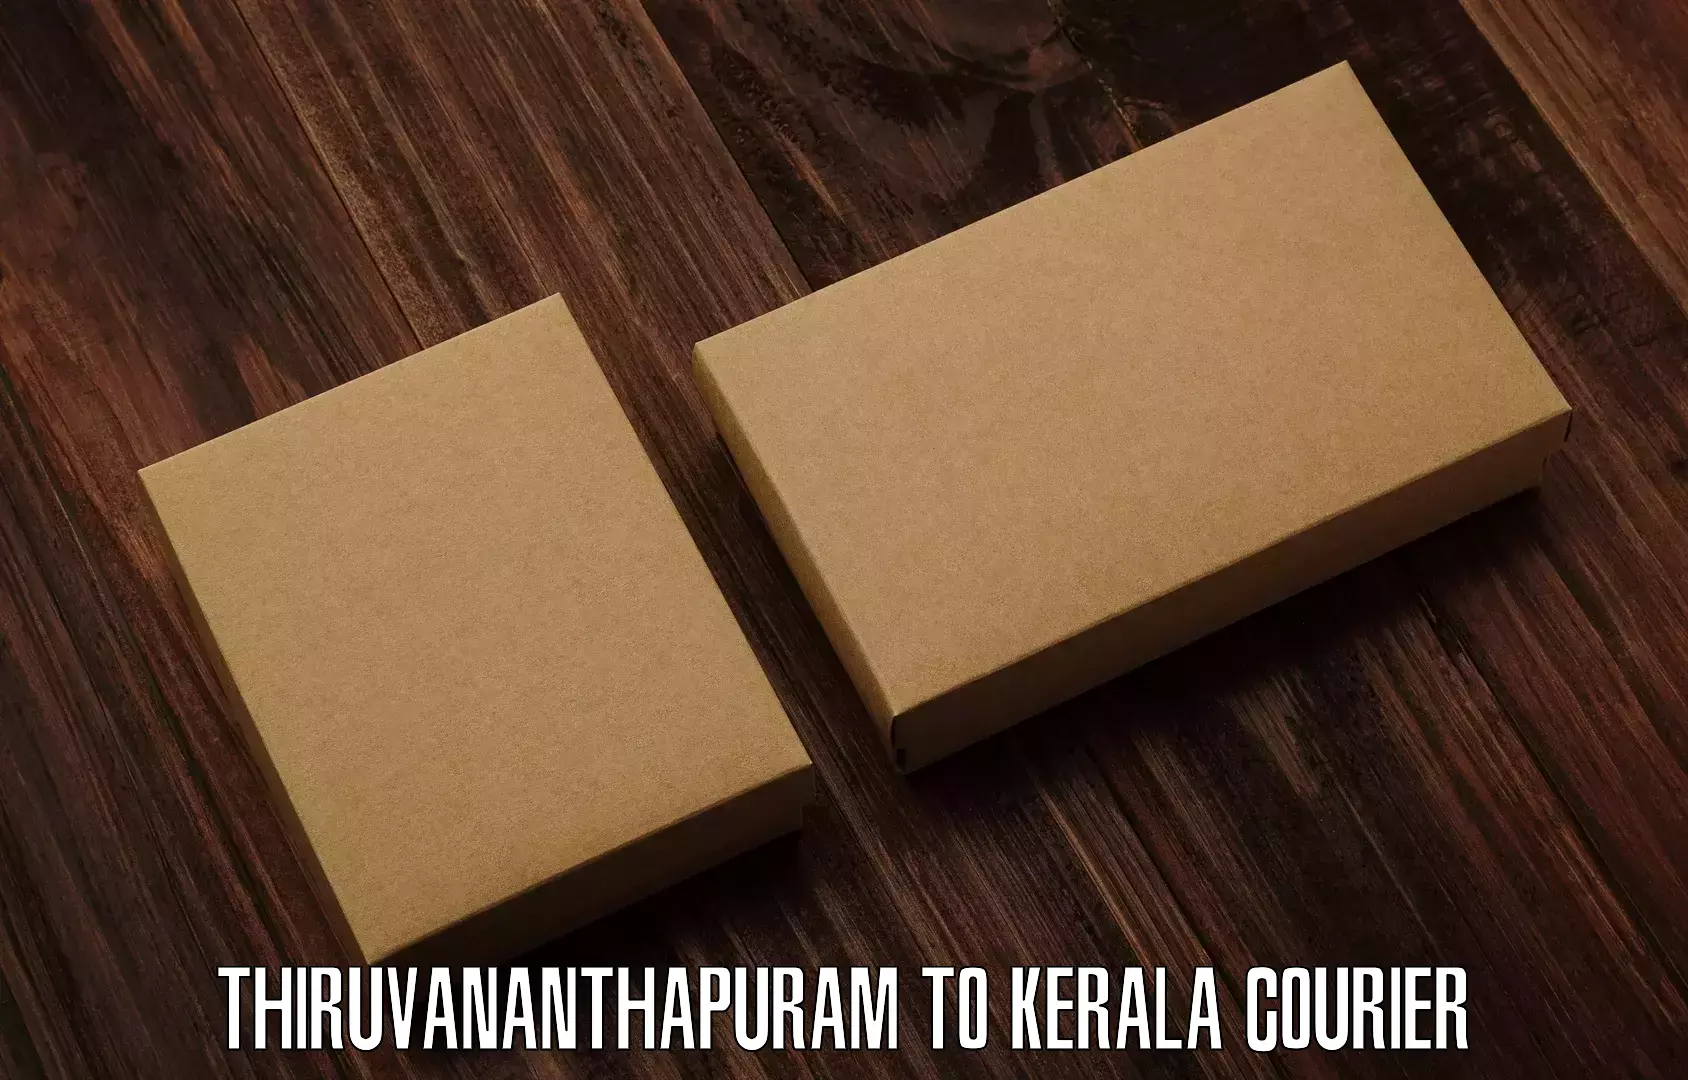 Efficient shipping operations Thiruvananthapuram to Kuttikol